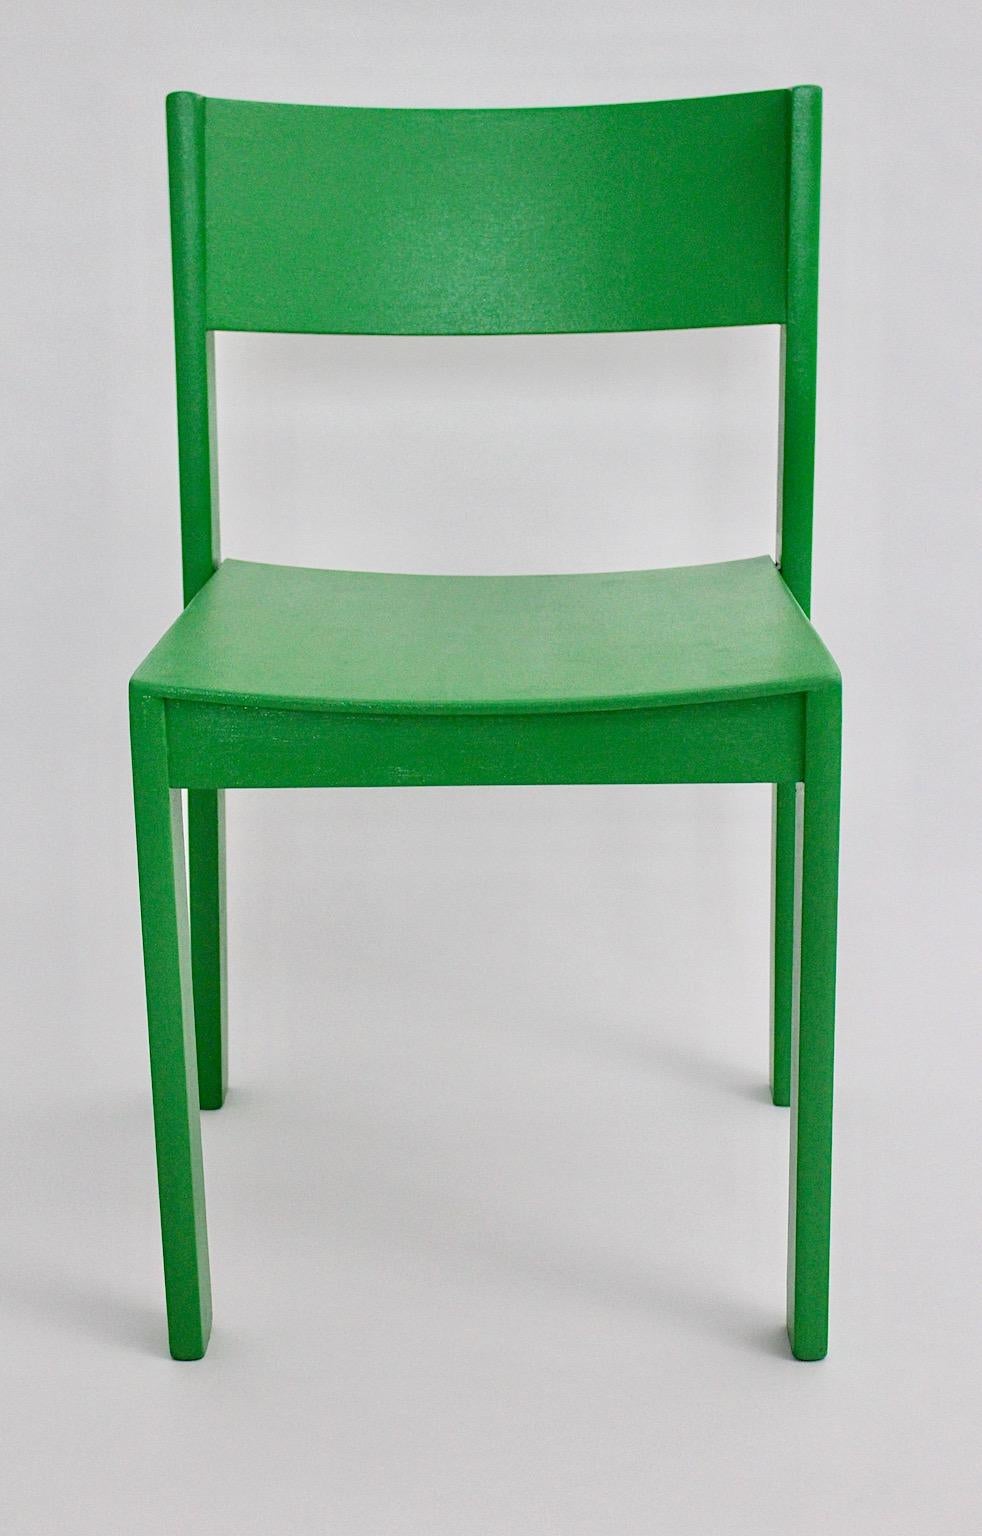 Moderniste Mid-Century Modern douze ( 12 ) chaises de salle à manger vintage en hêtre de couleur verte conçues et fabriquées dans les années 1950 en Autriche.
Un fabuleux ensemble de douze chaises de salle à manger en hêtre nouvellement laqué dans